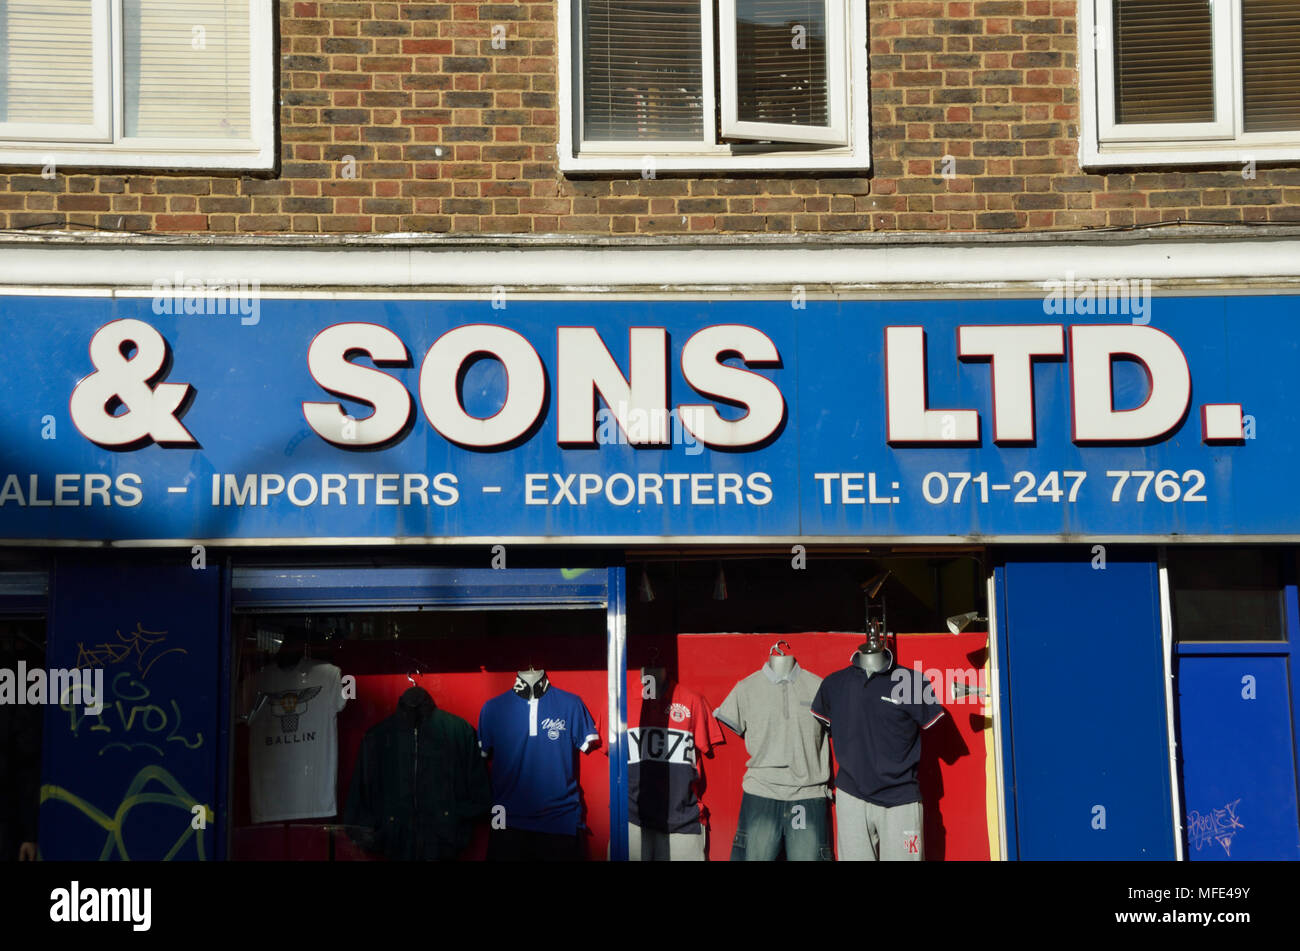 'And Sons Ltd' signe au-dessus d'une boutique de vente en gros de vêtements. Banque D'Images